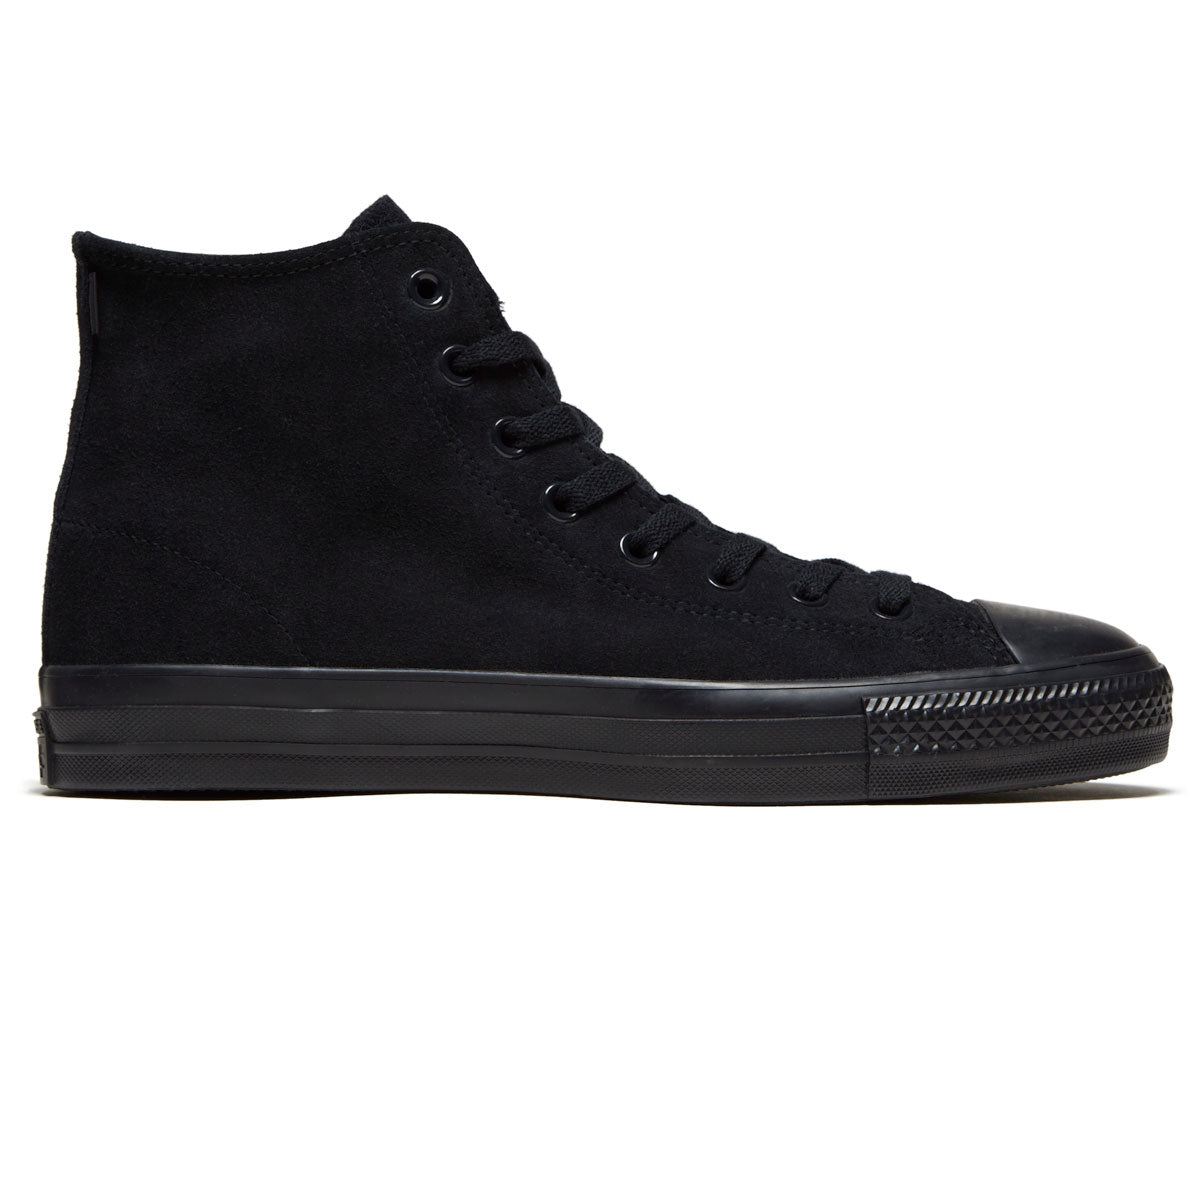 Converse Chuck Taylor All Star Pro Hi Shoes - Black/Black/Black – CCS